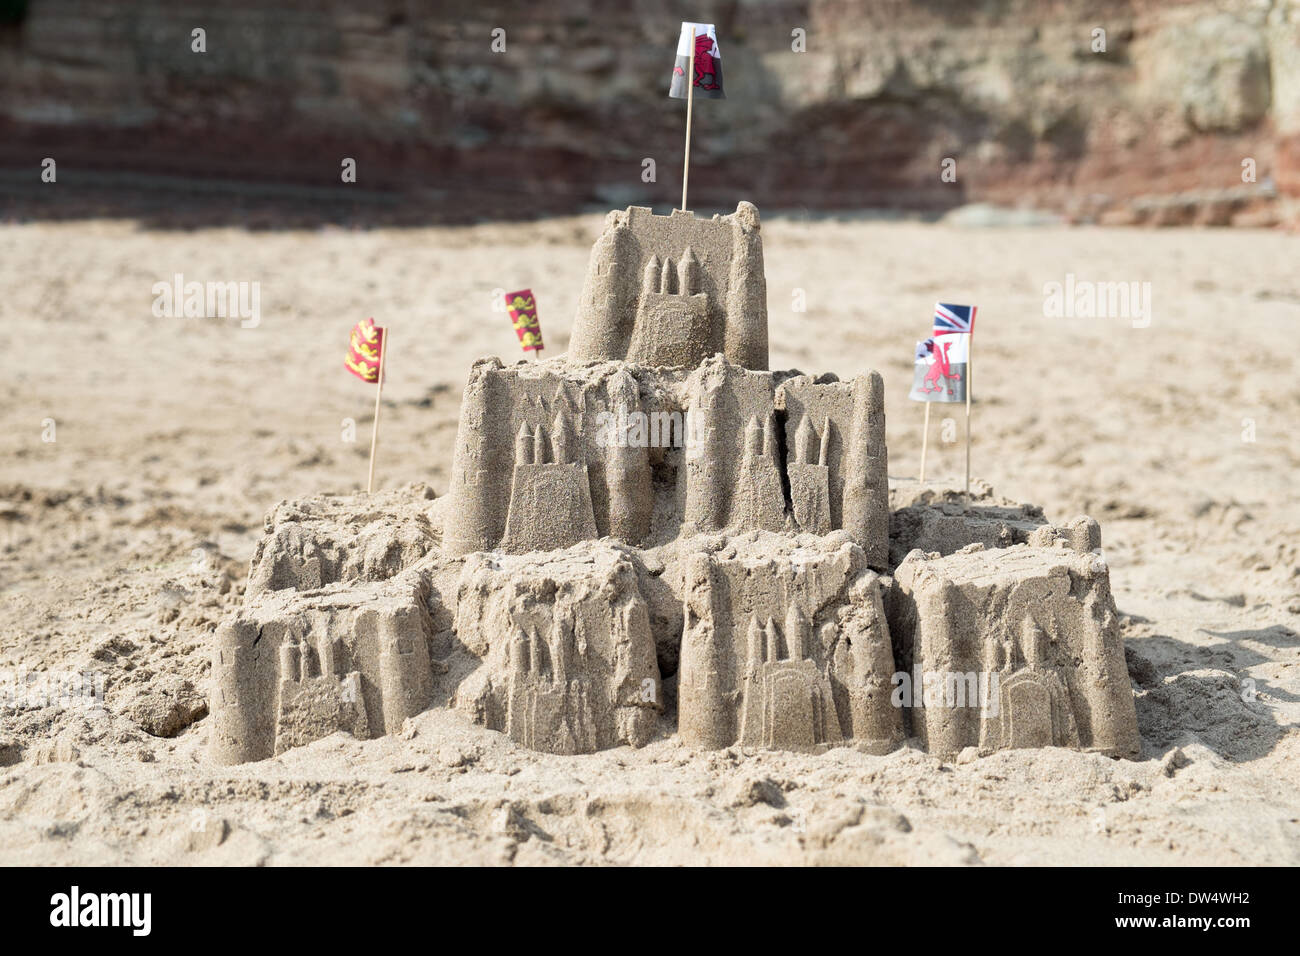 Un château de sable sur une plage de sable fin avec le Welsh National autres drapeaux britanniques Banque D'Images